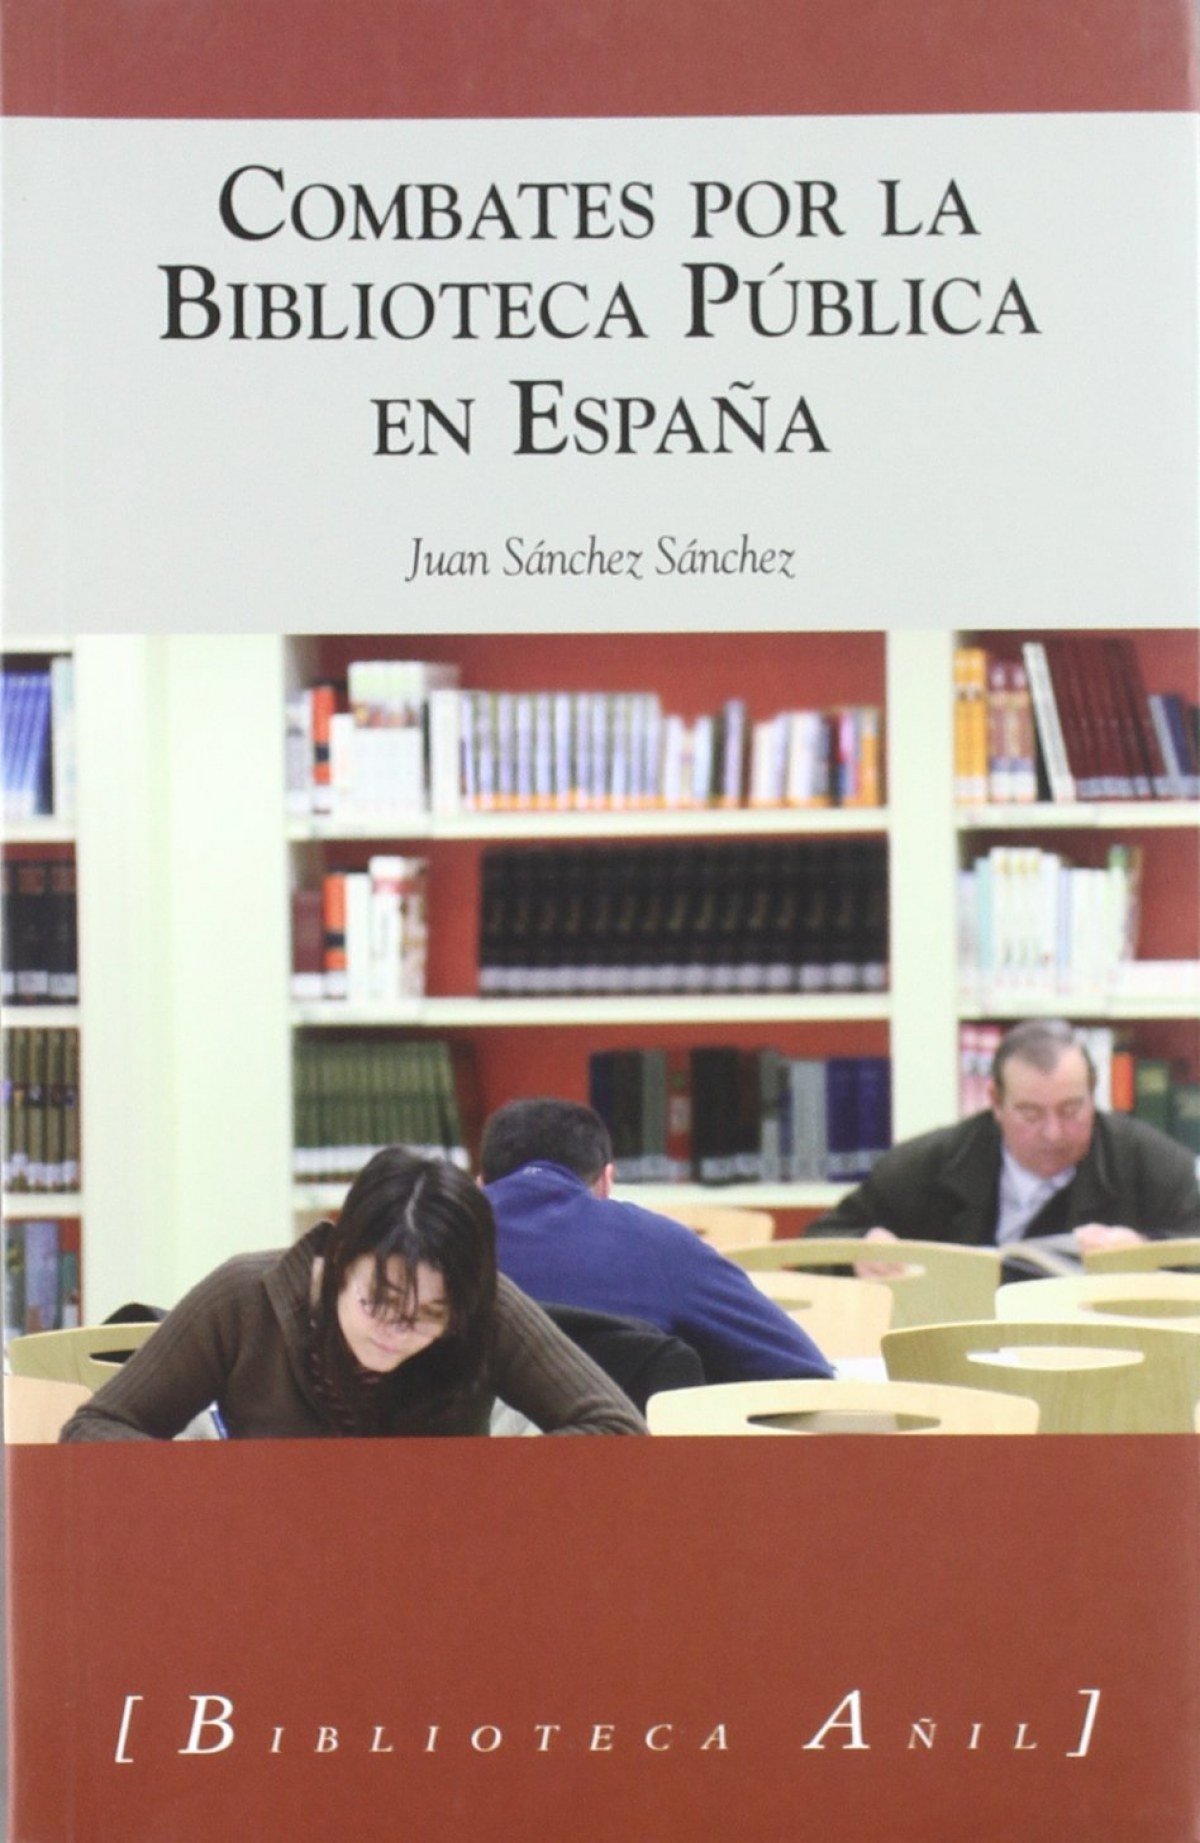 Combates por la biblioteca pública en españa - Sánchez Sánchez, Juan